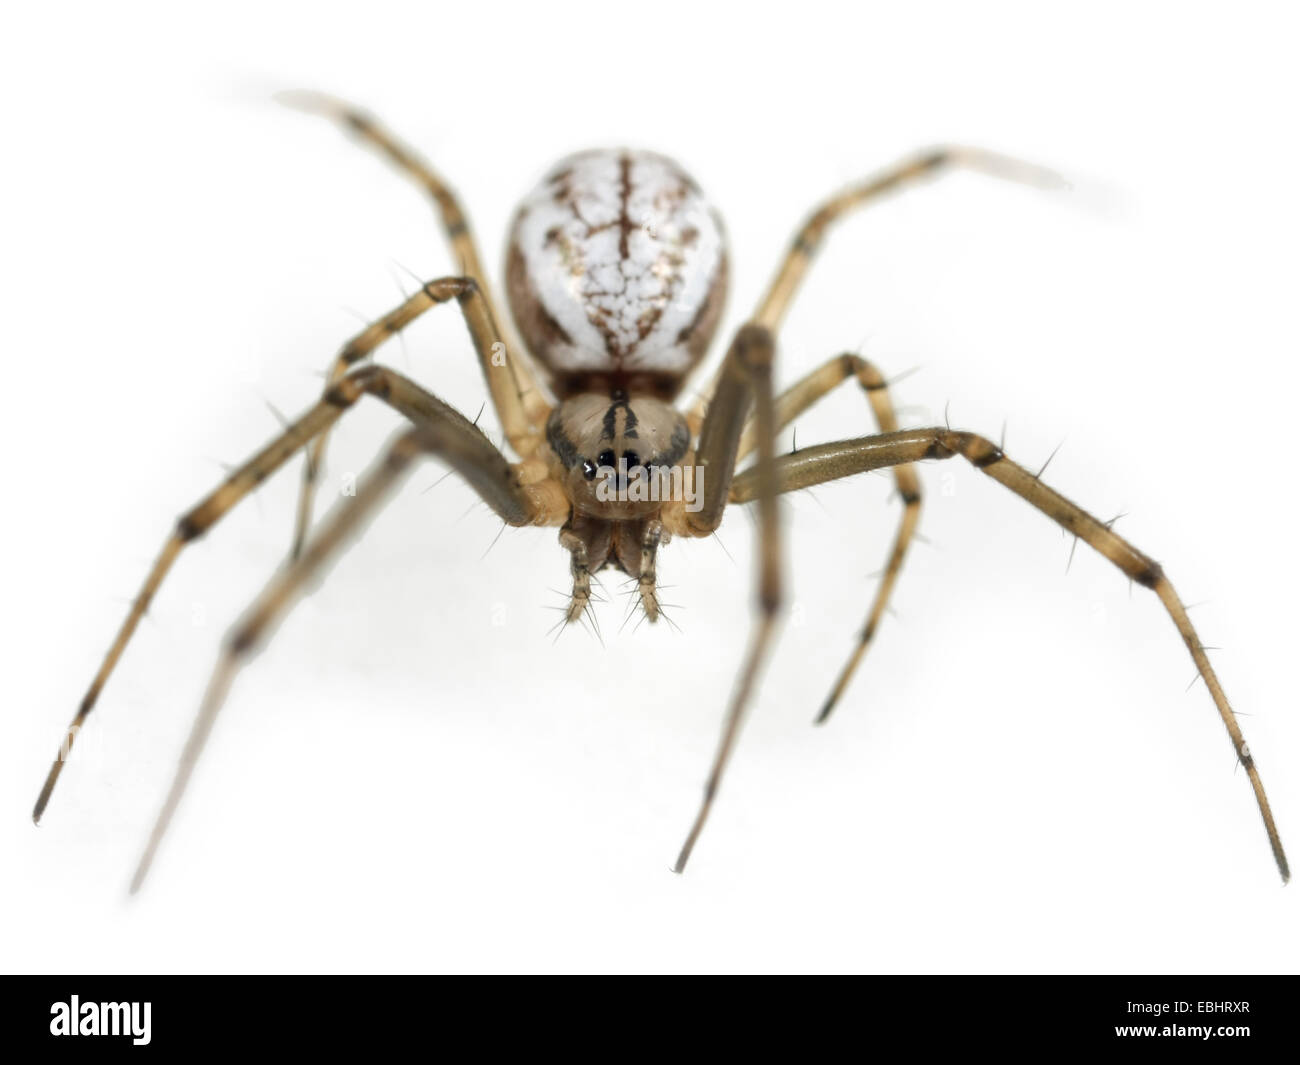 Une femme-Hamac weaver (Linyphia triangularis) araignée sur un fond blanc, une partie de la famille des Amphinectidae - Sheetweb weavers. Banque D'Images